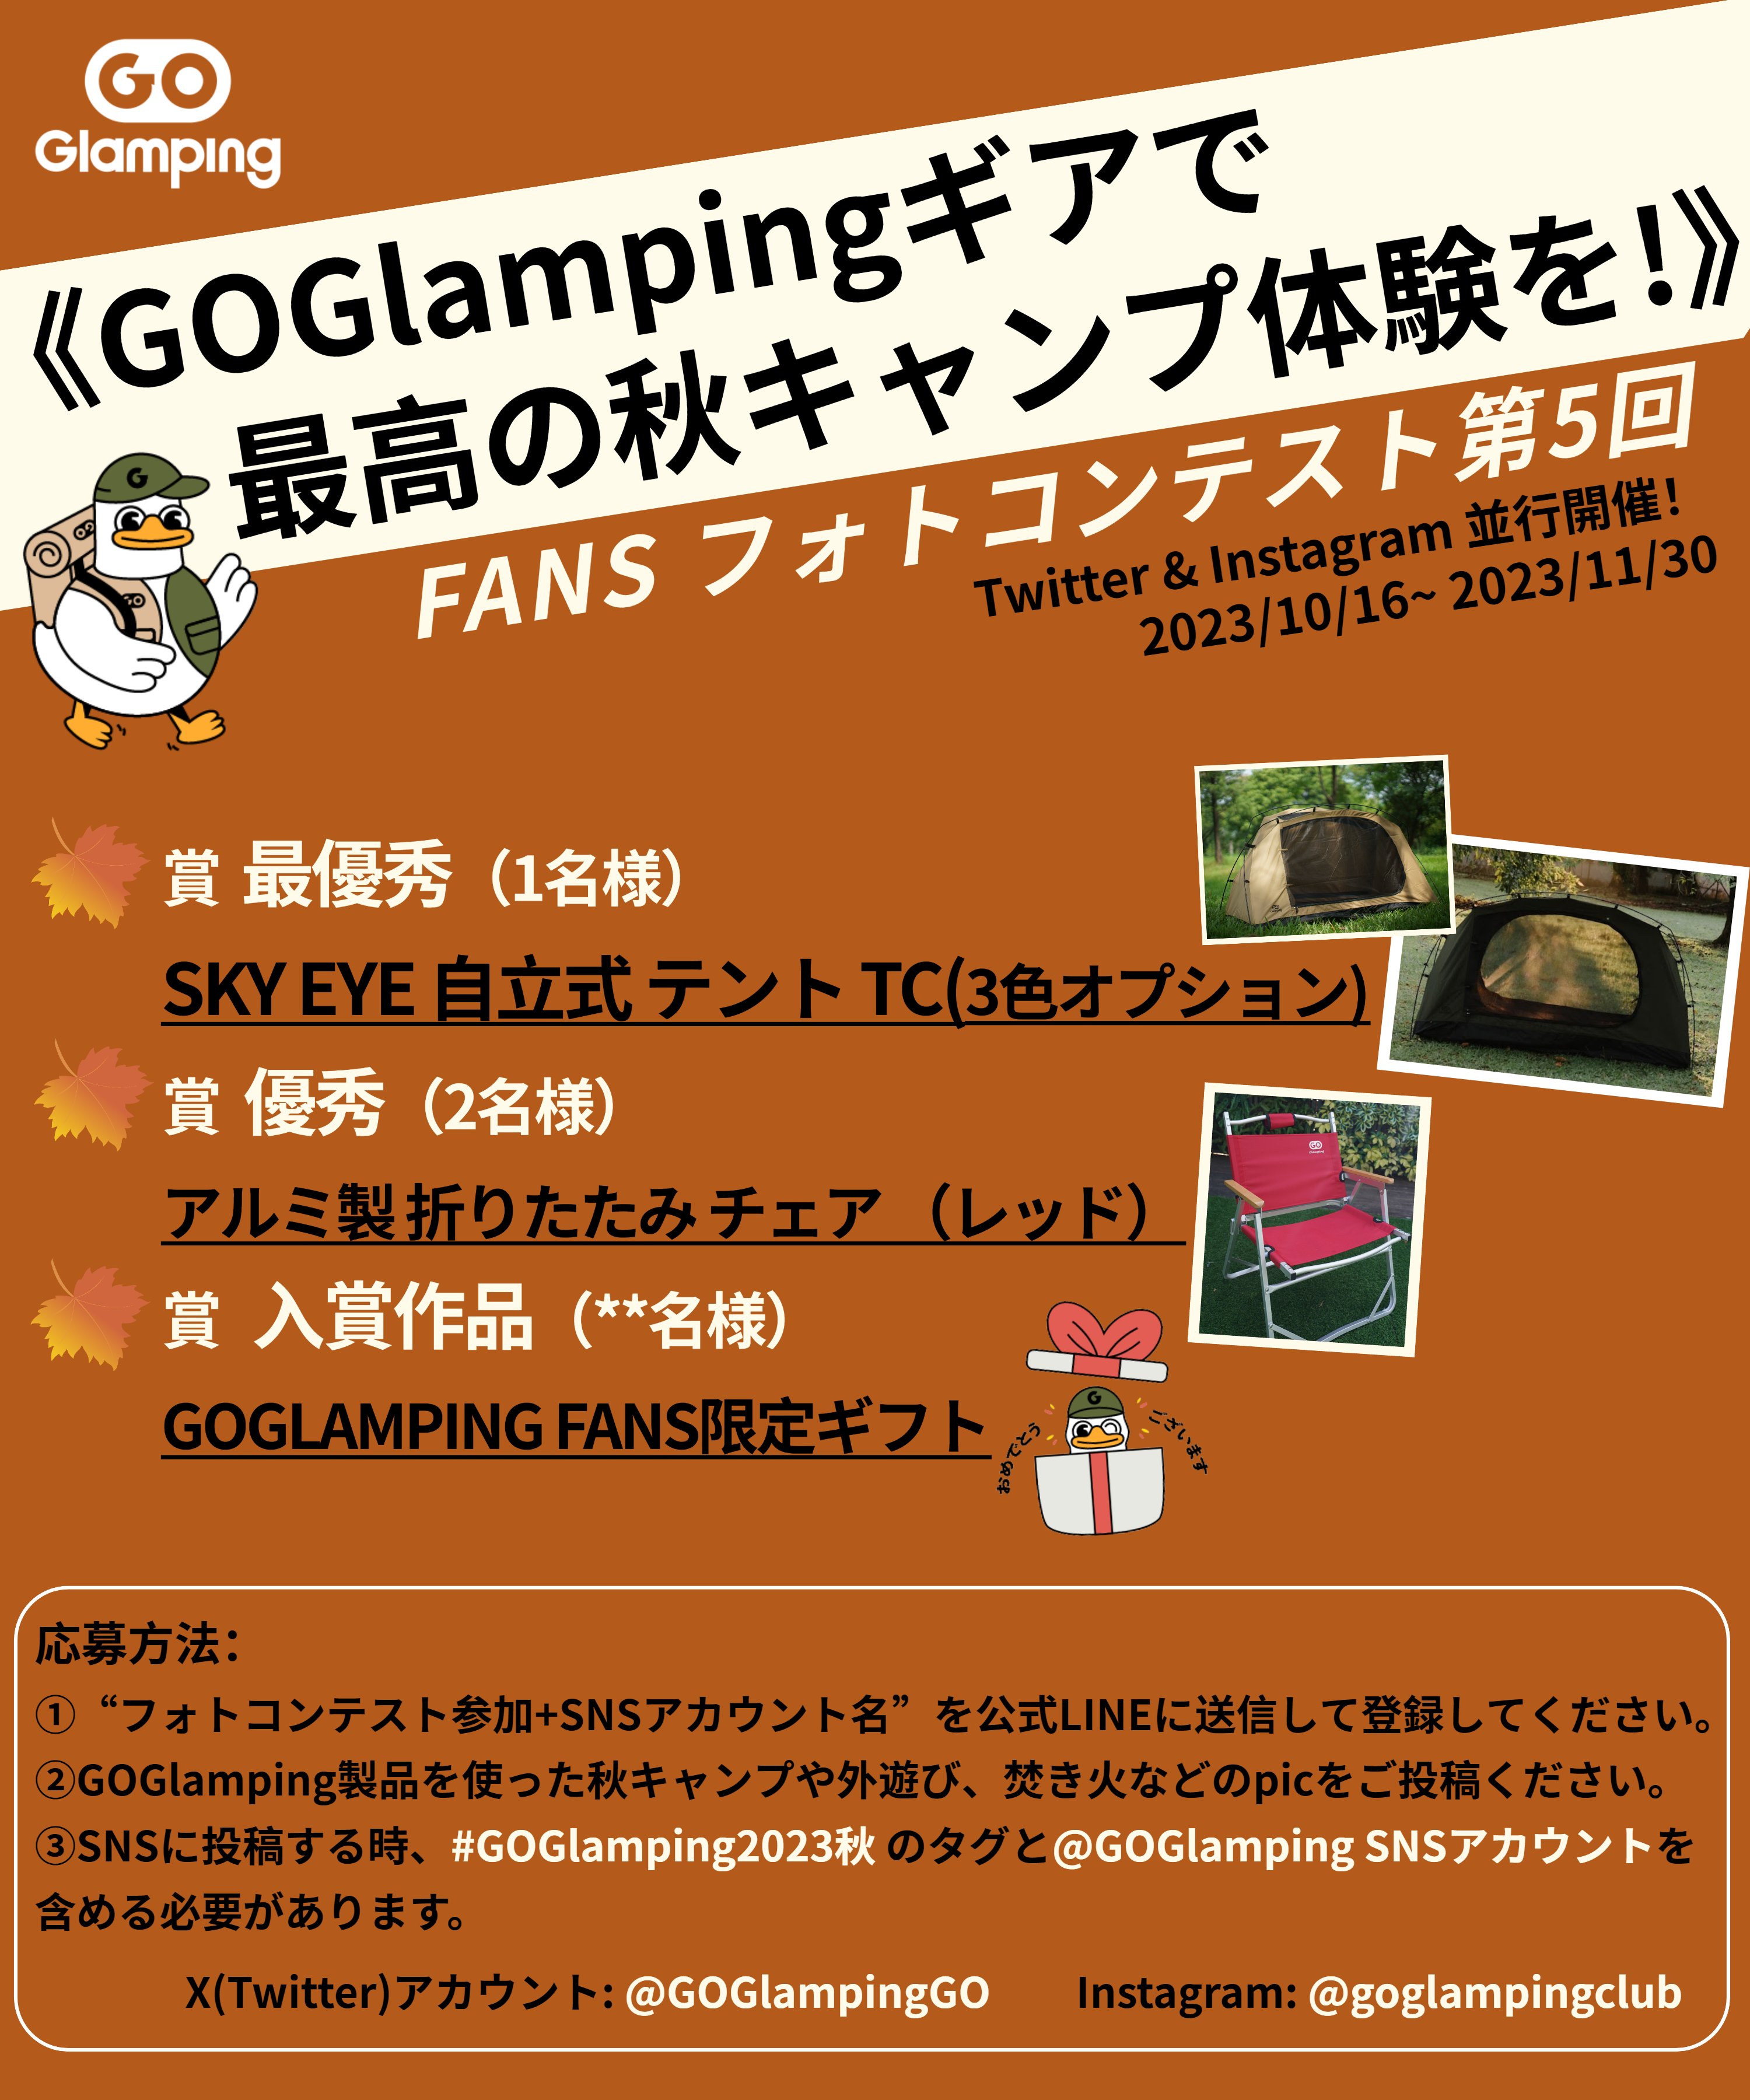 GOGlamping-official (@GOGlampingGO) / X